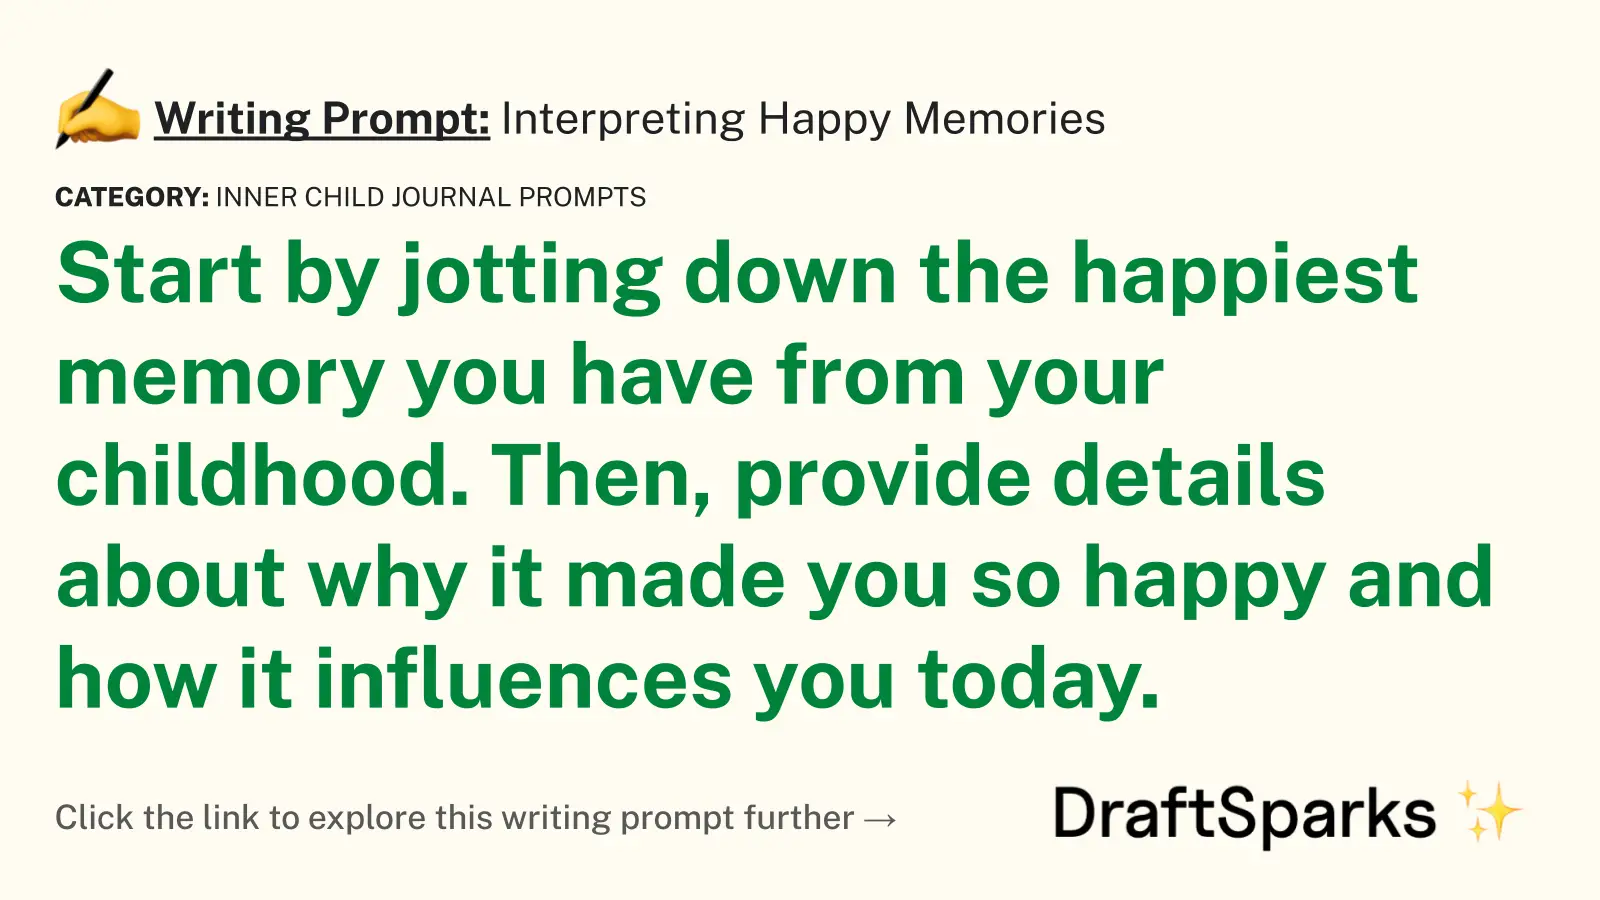 Interpreting Happy Memories